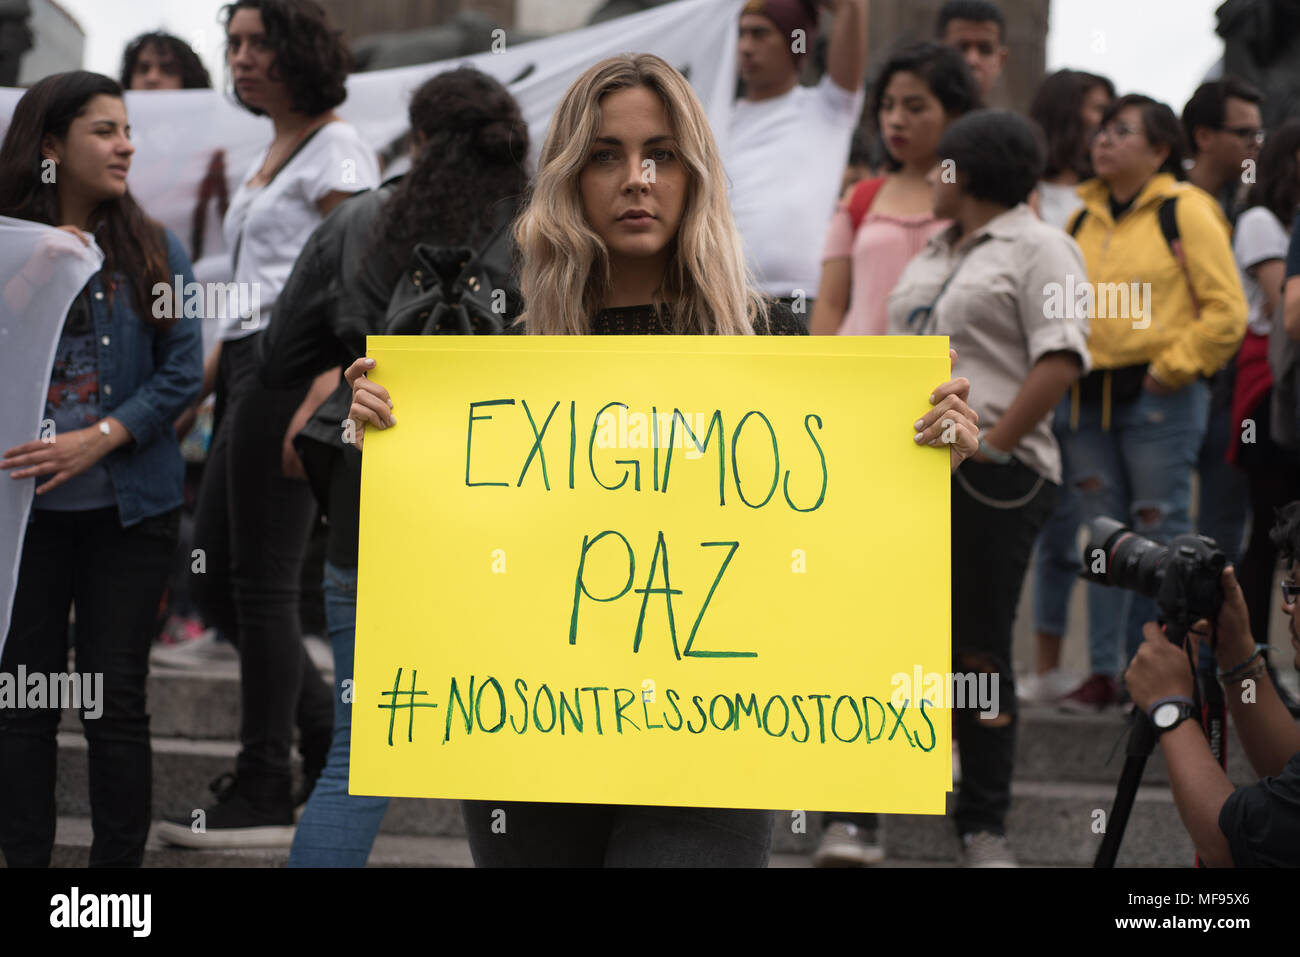 Mexiko City, Mexiko. 24. April 2018. Eine Demonstrantin hält ein Banner mit der Aufschrift "Exigimos paz' ('Wir fordern Frieden"). Hunderte gesammelt für die Tötung von drei Studenten in Guadalajara, Mexiko zu protestieren. Credit: Miguel A. Aguilar-Mancera/Alamy leben Nachrichten Stockfoto